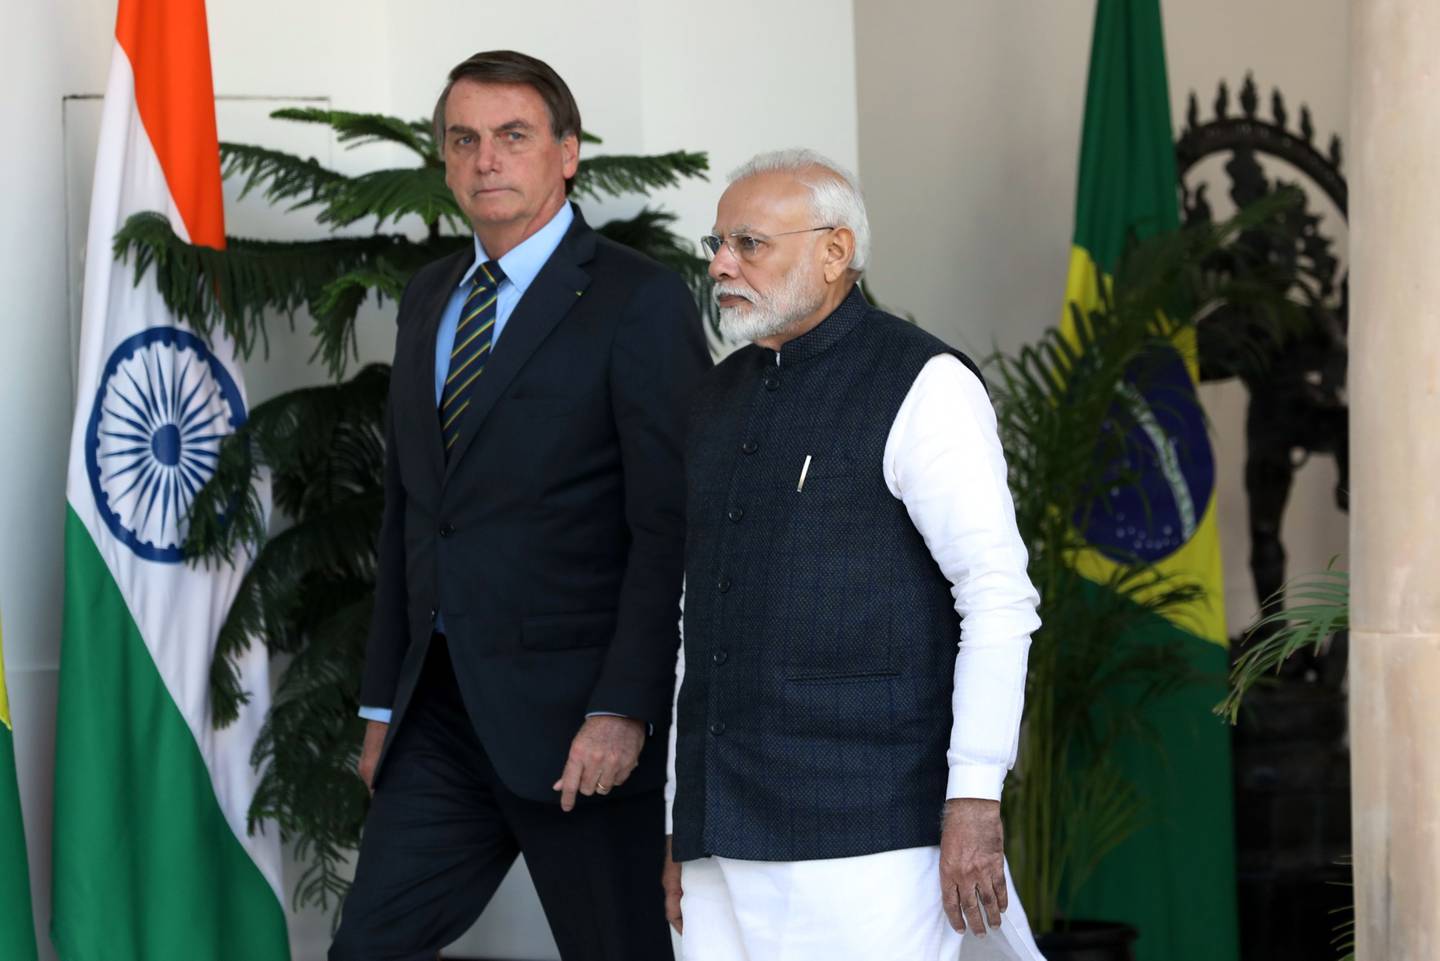 Narendra Modi, primer ministro de la India, a la derecha, camina con Jair Bolsonaro, presidente de Brasil, en la Casa Hyderabad en Nueva Delhi, India, el sábado 25 de enero de 2020.